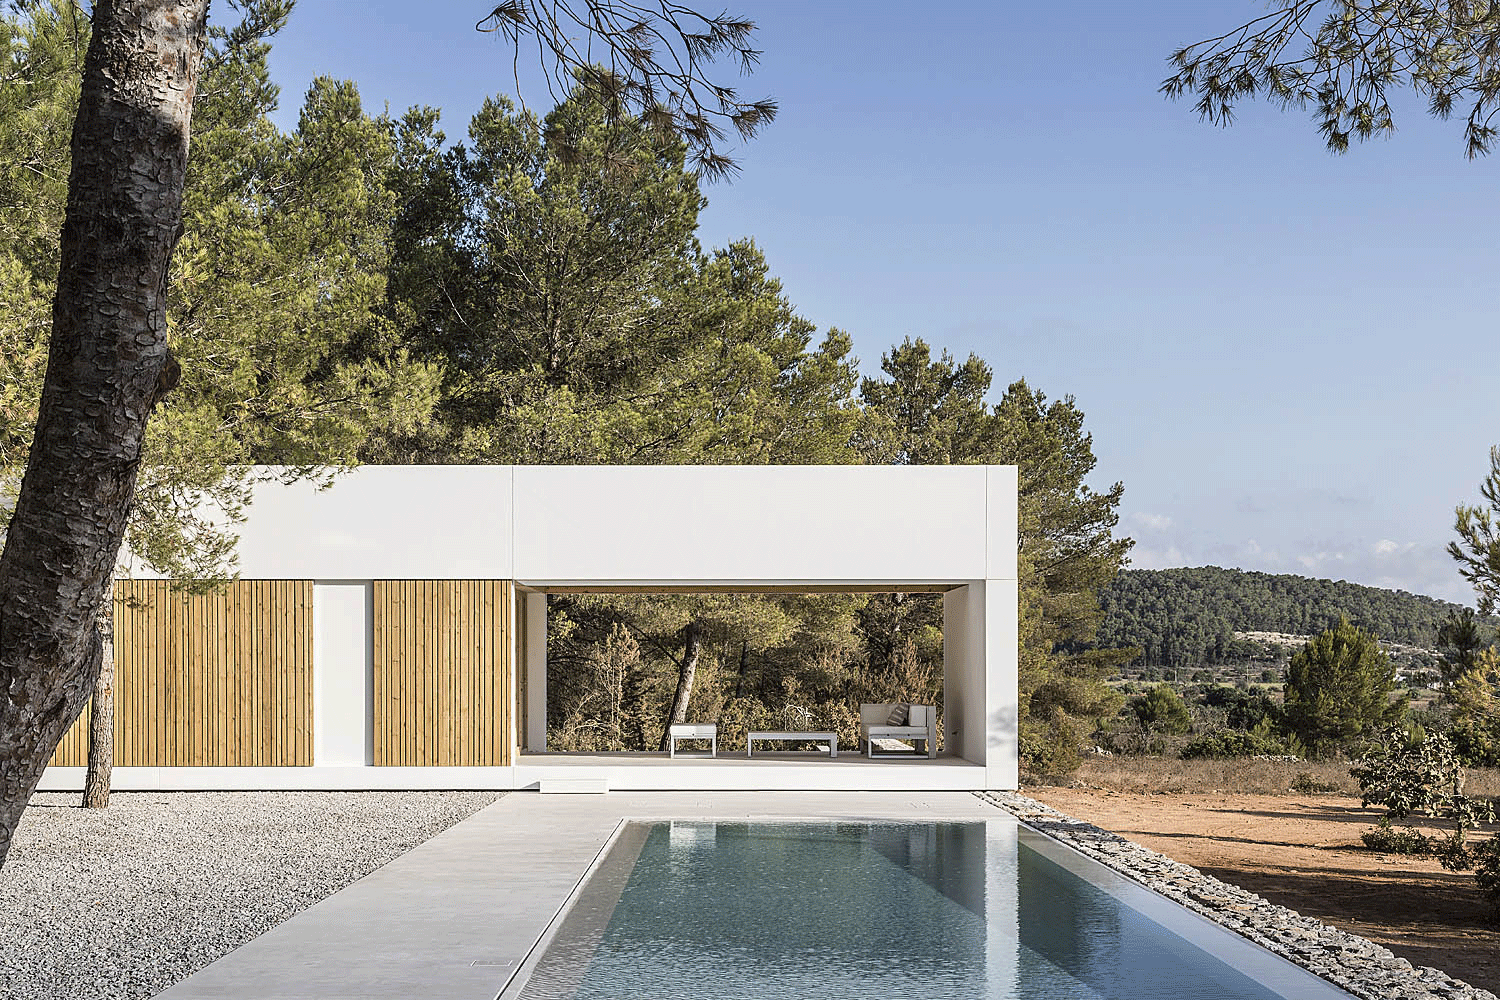 A house in Sant Mateu, Ibiza by architecture studio Marià Castelló.